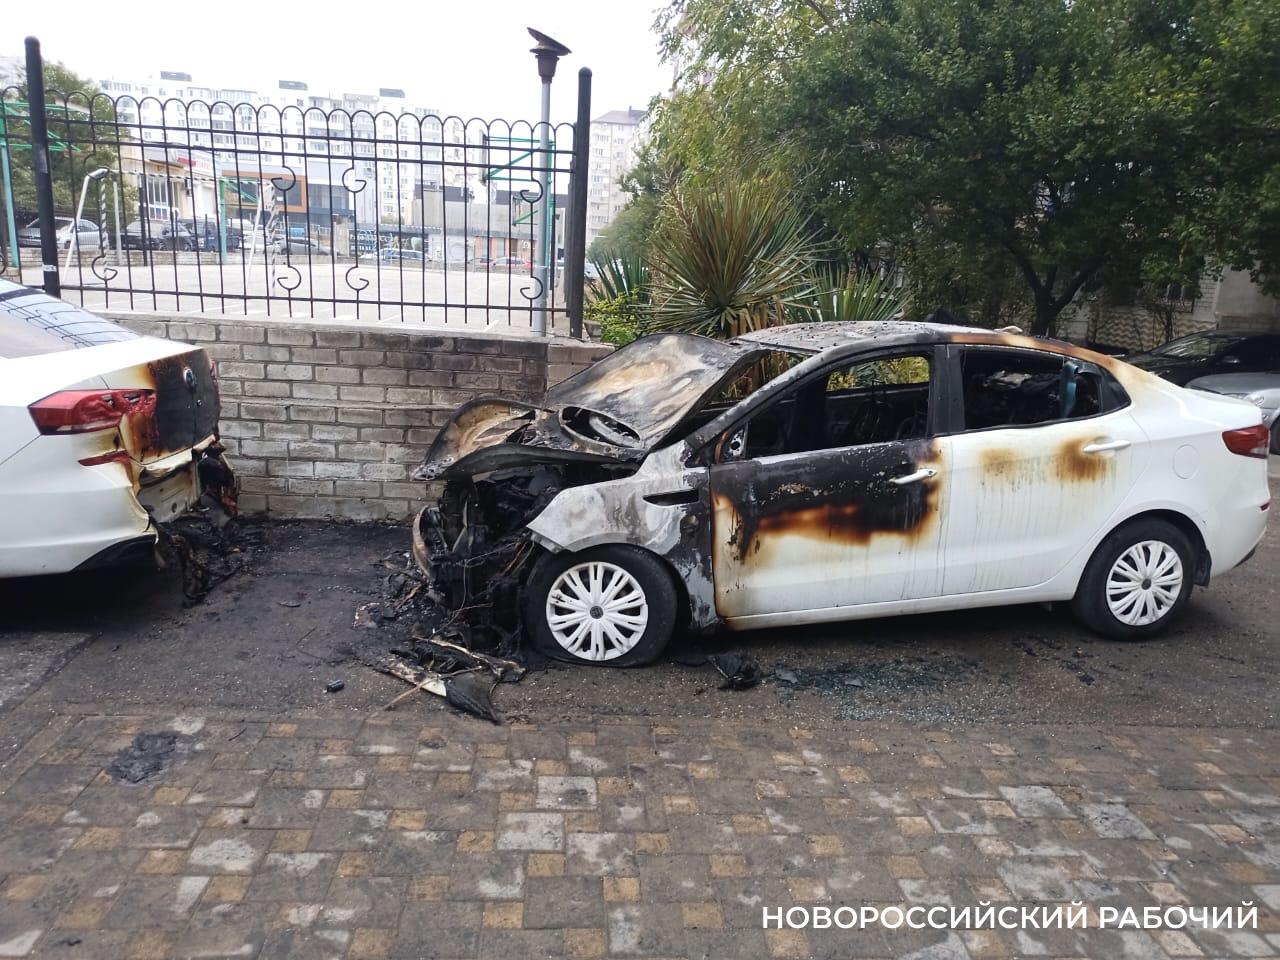 В Новороссийске ночью сгорела машина. Пострадала и соседняя